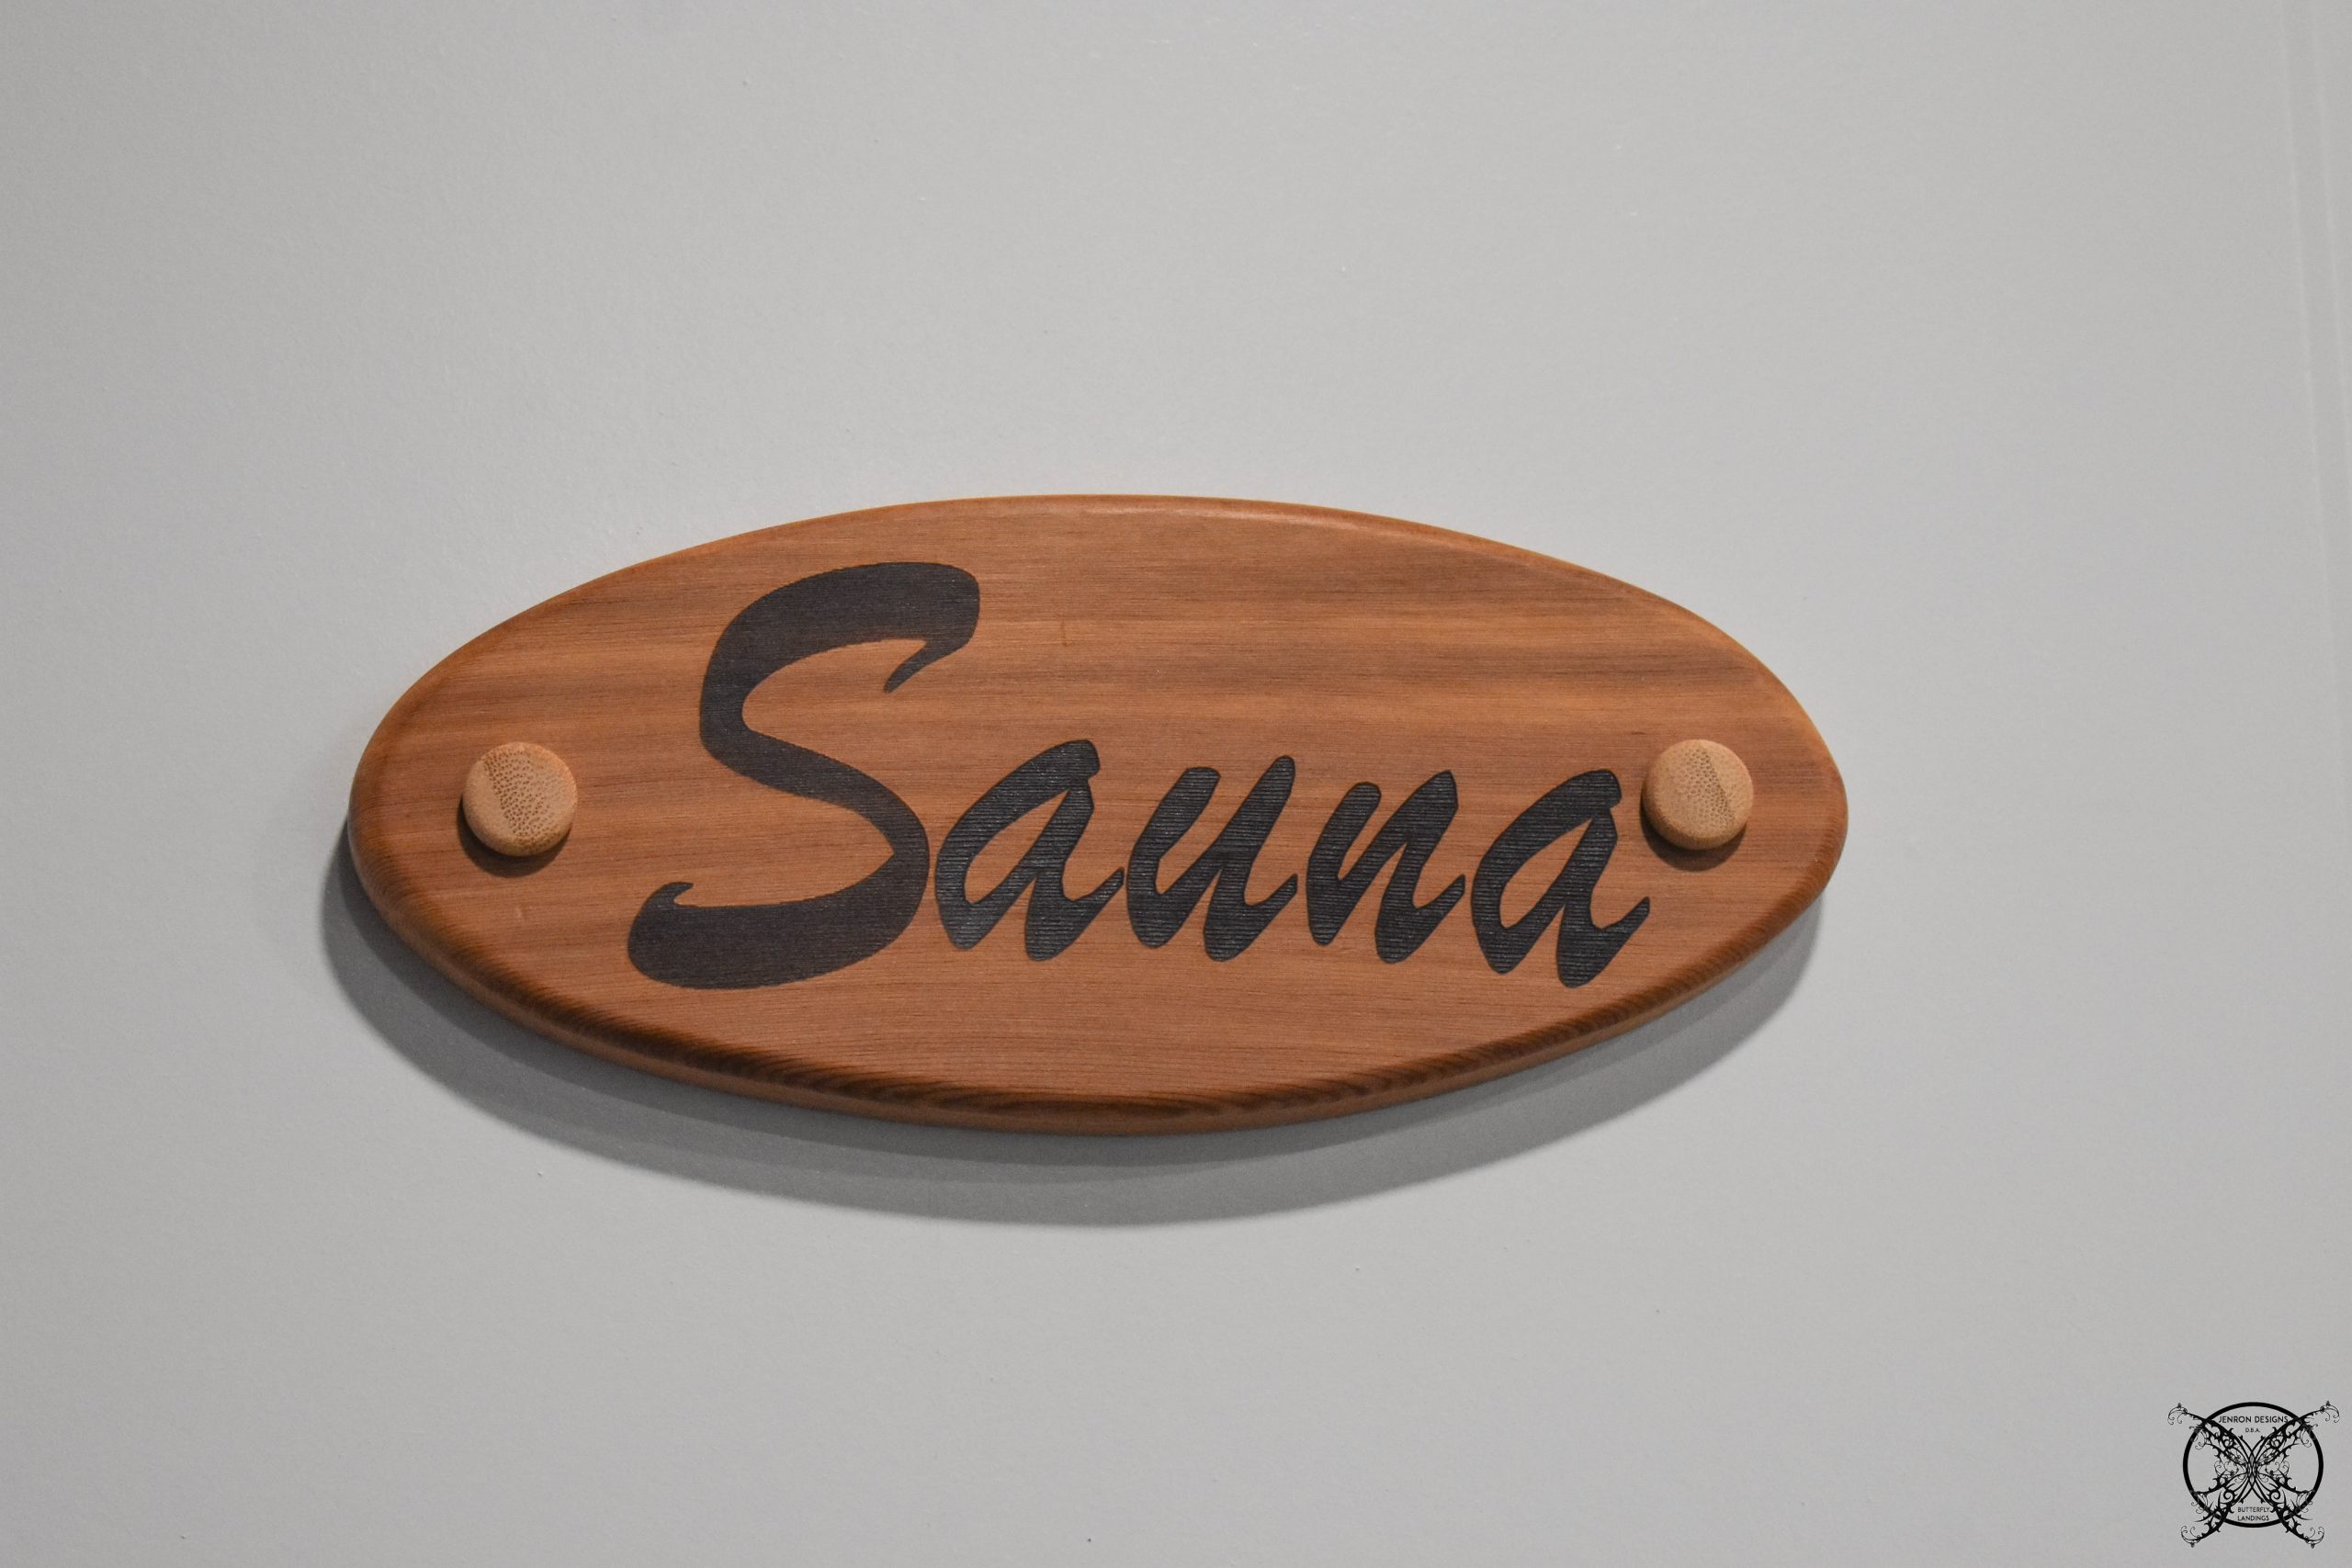 Sauna Door Decal JENRON DESIGNS